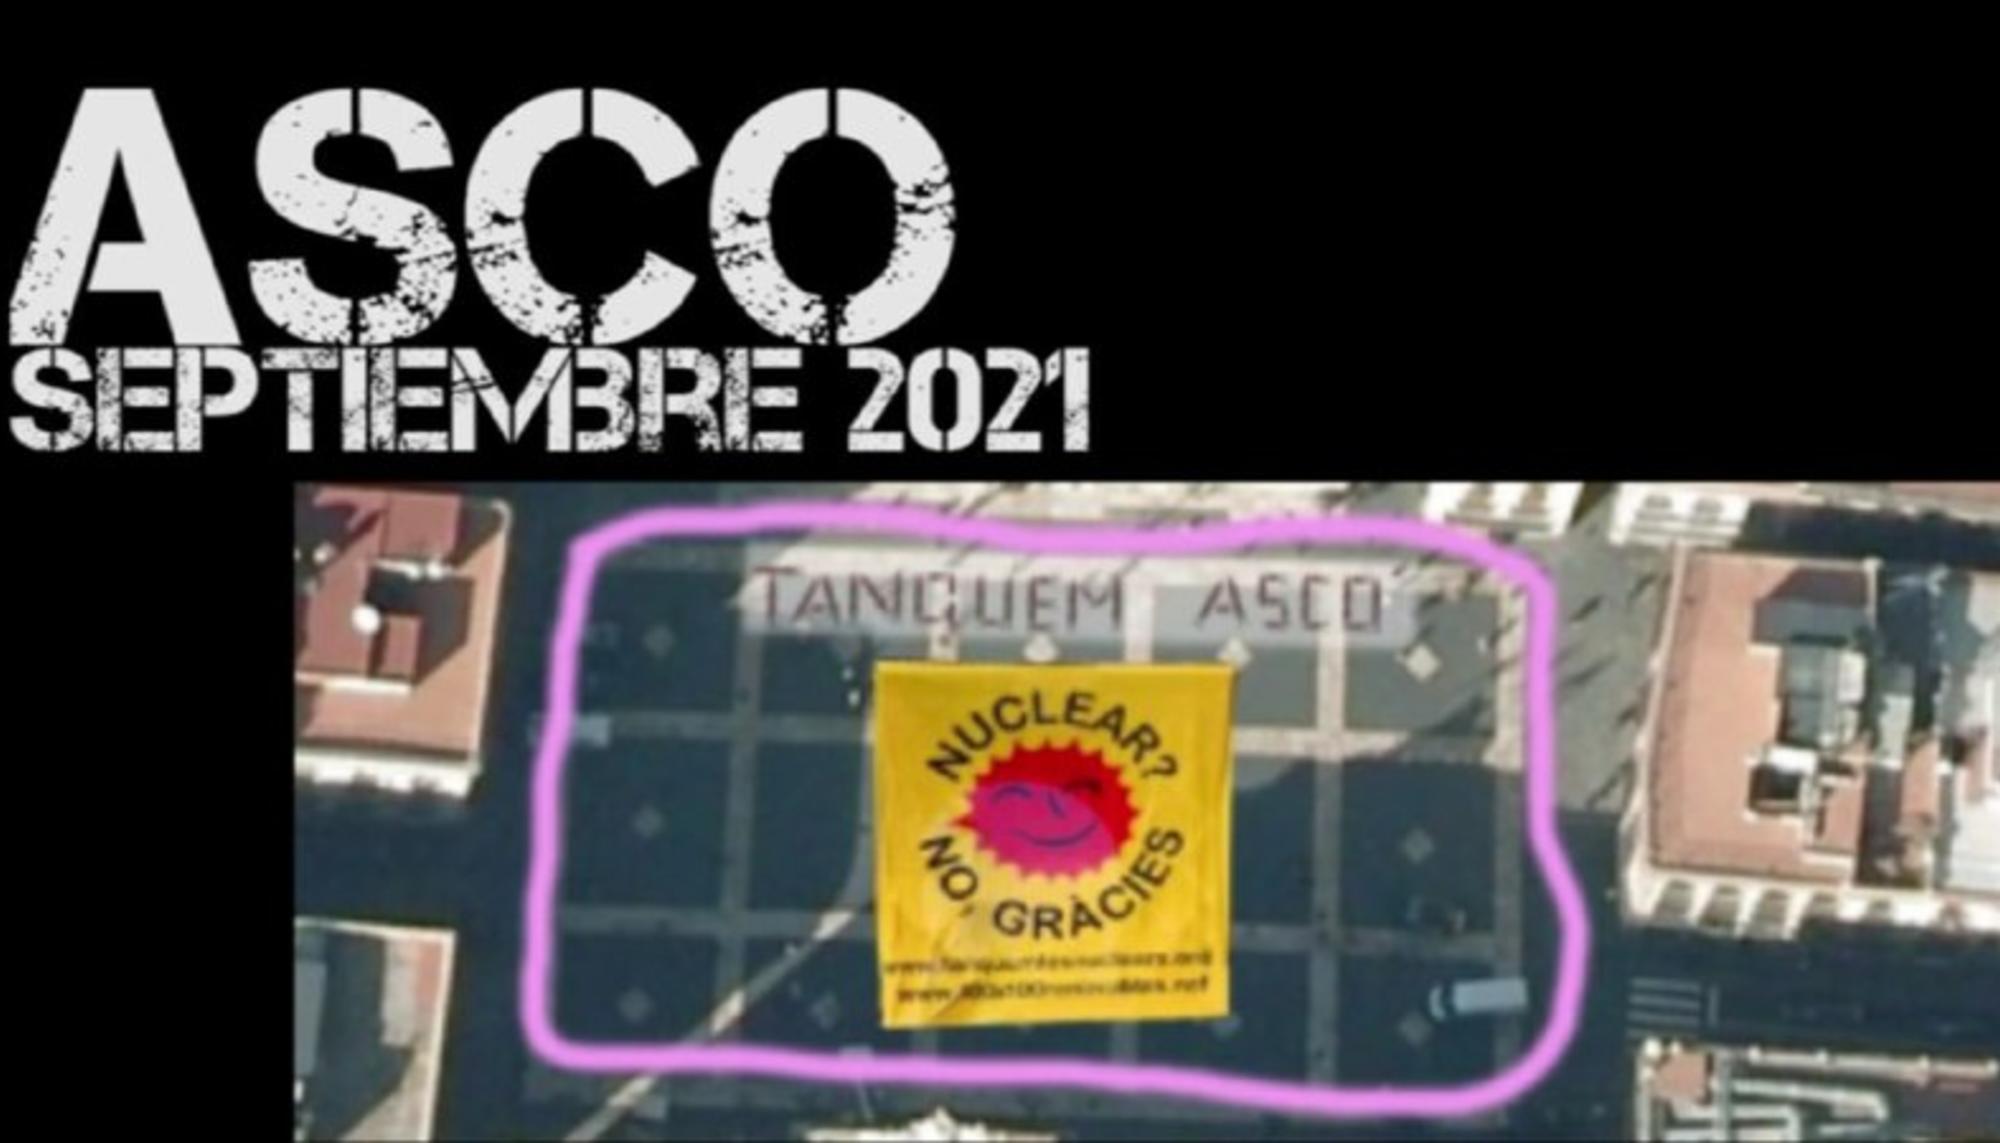 Tanquem Ascó. Fecha de fin de licencia: septiembre 2021